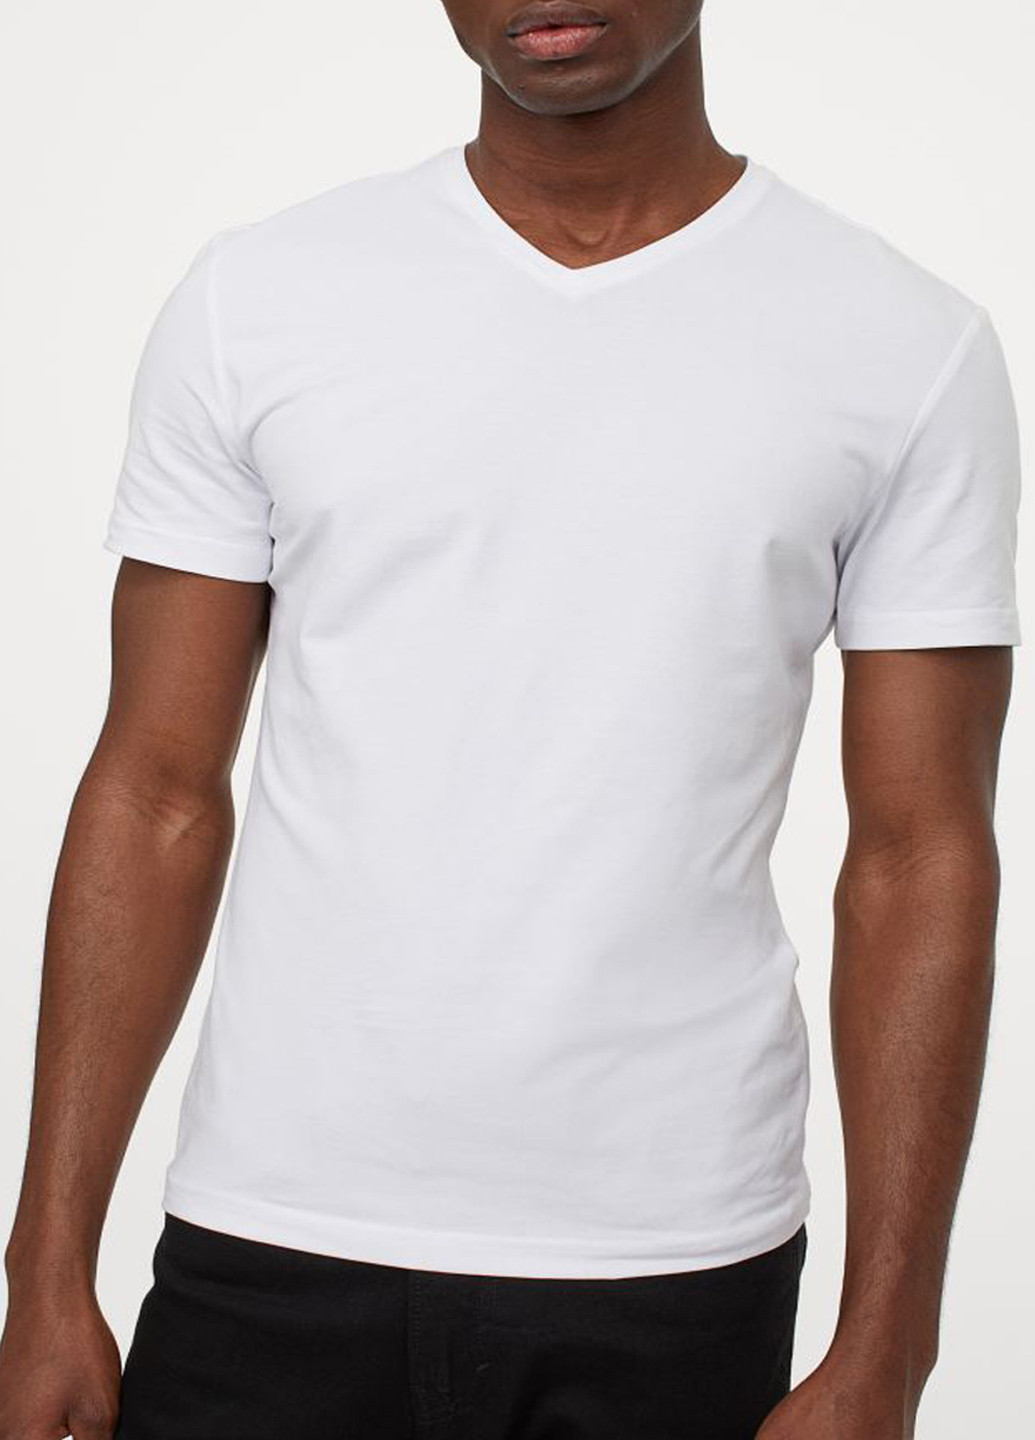 Чорно-біла футболки H&M